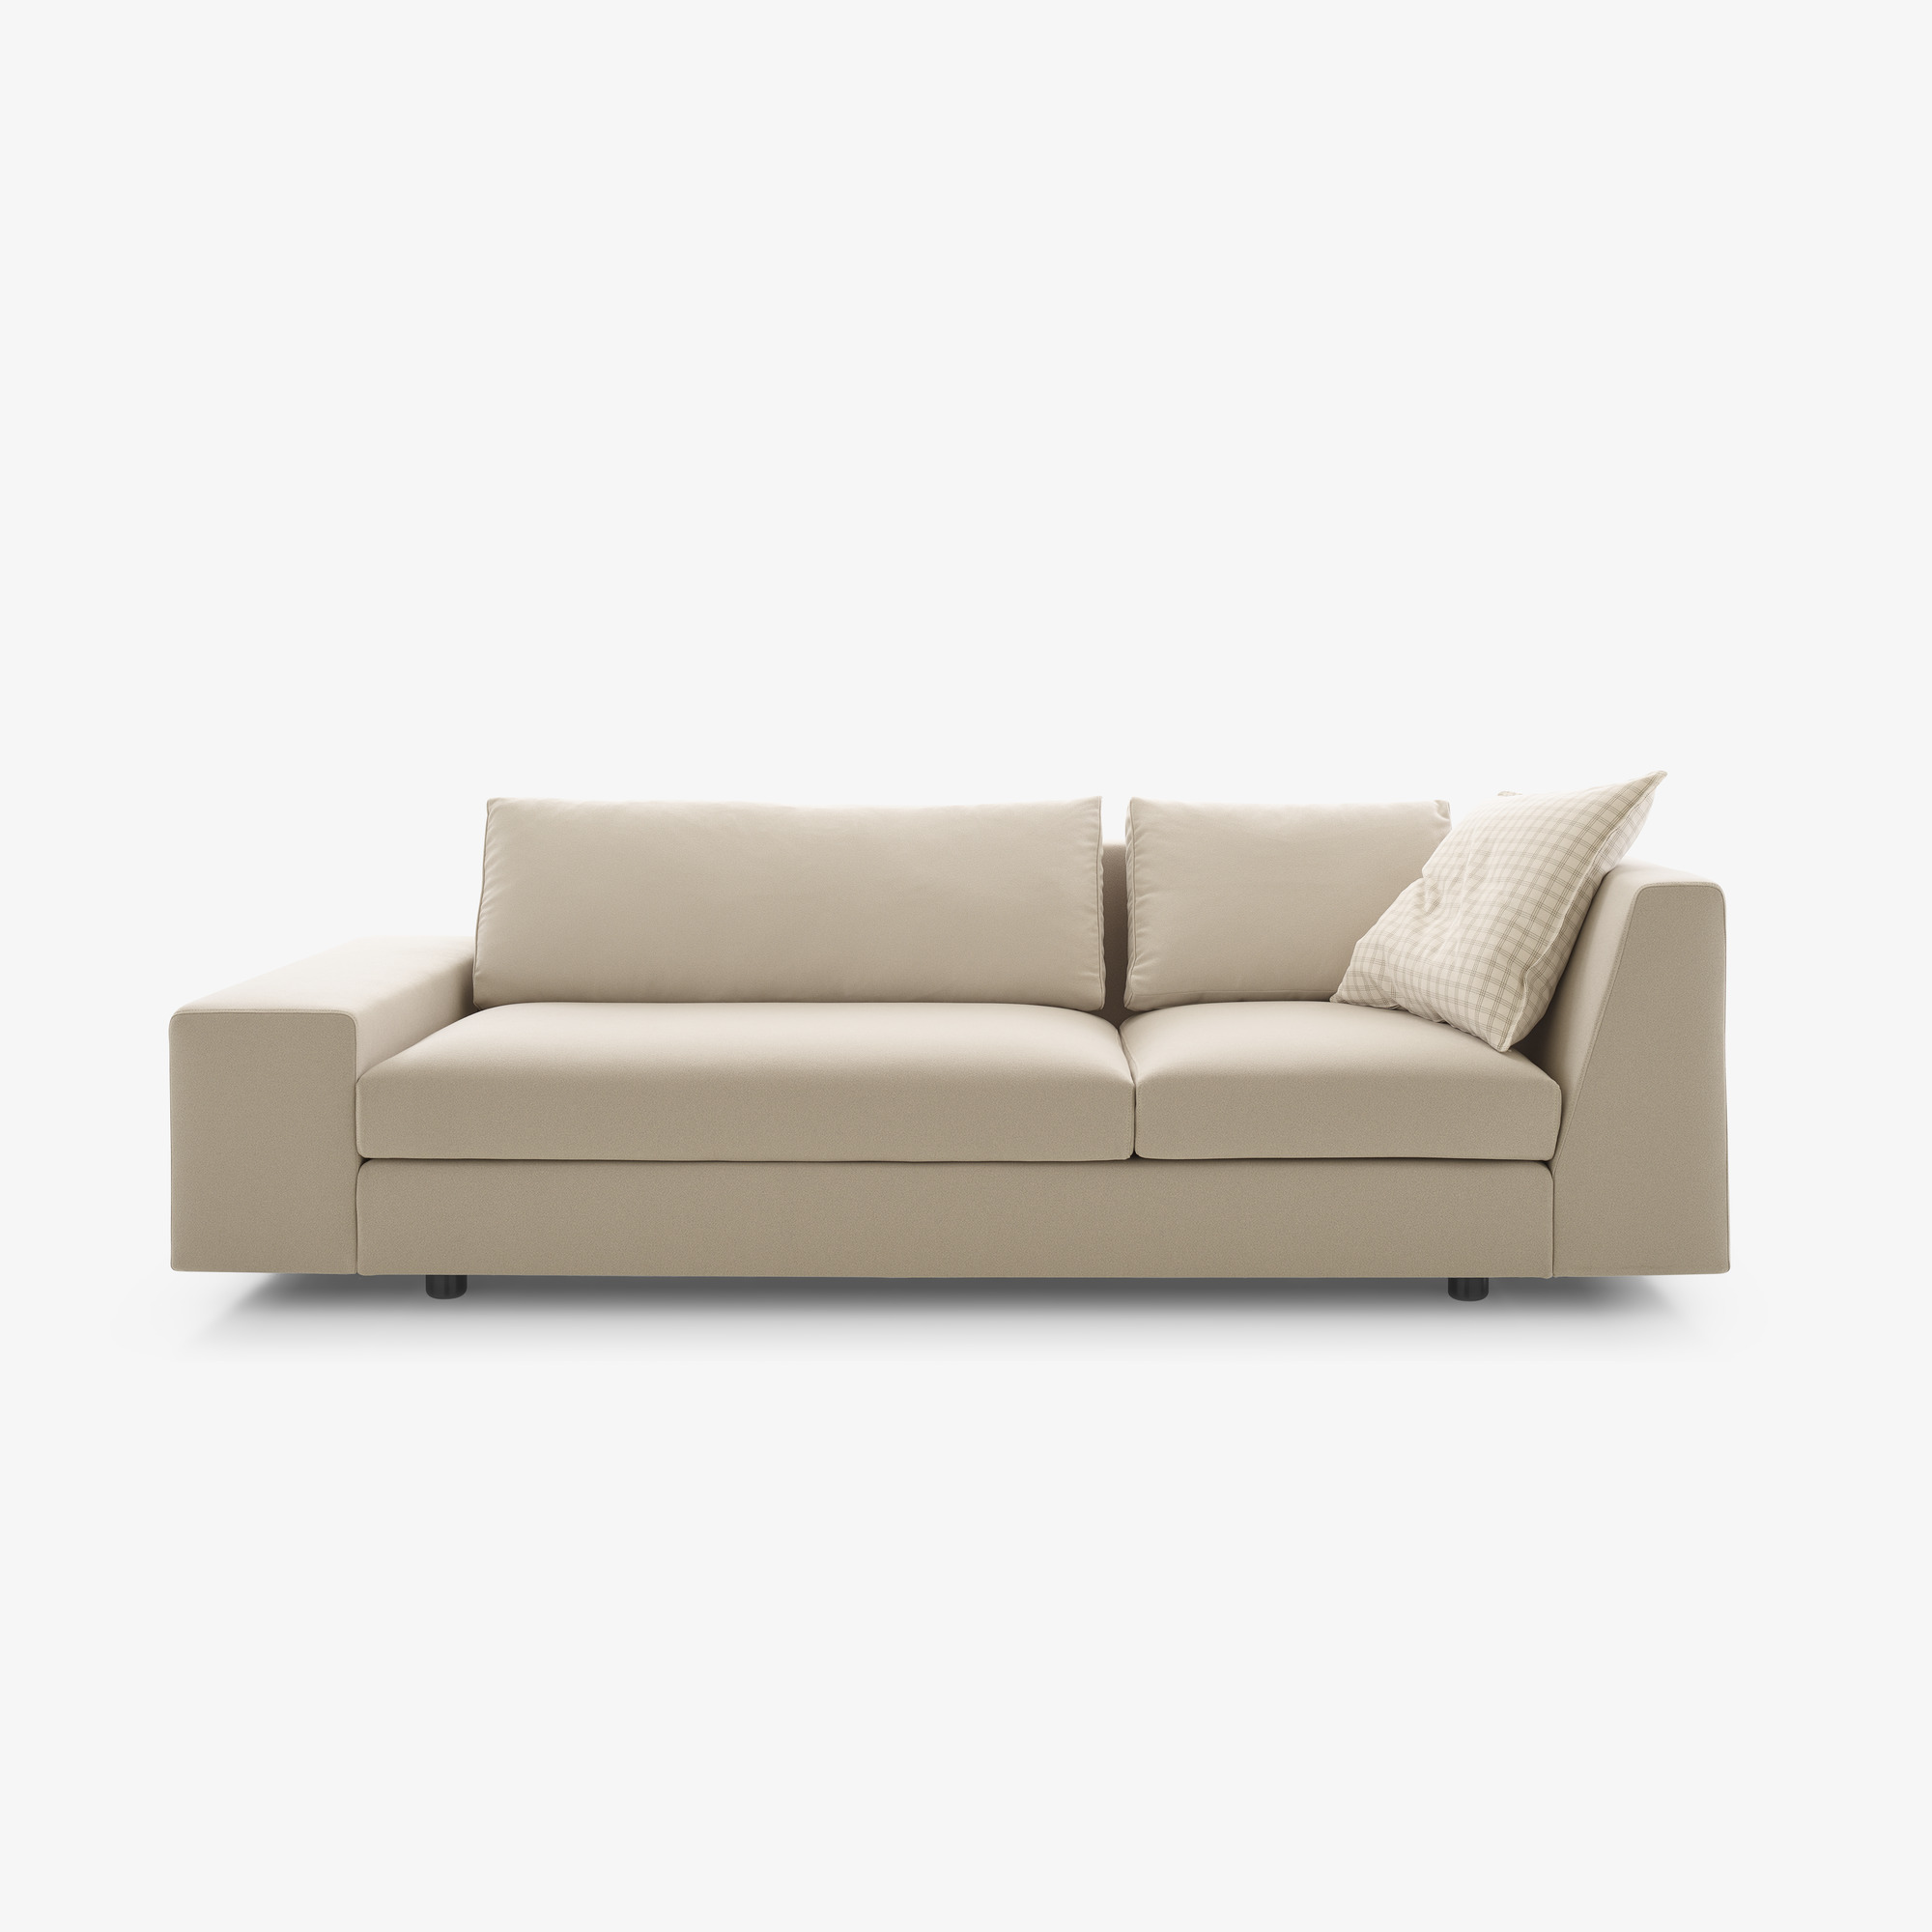 Image Sofa grande asimetrico articulo completo 1